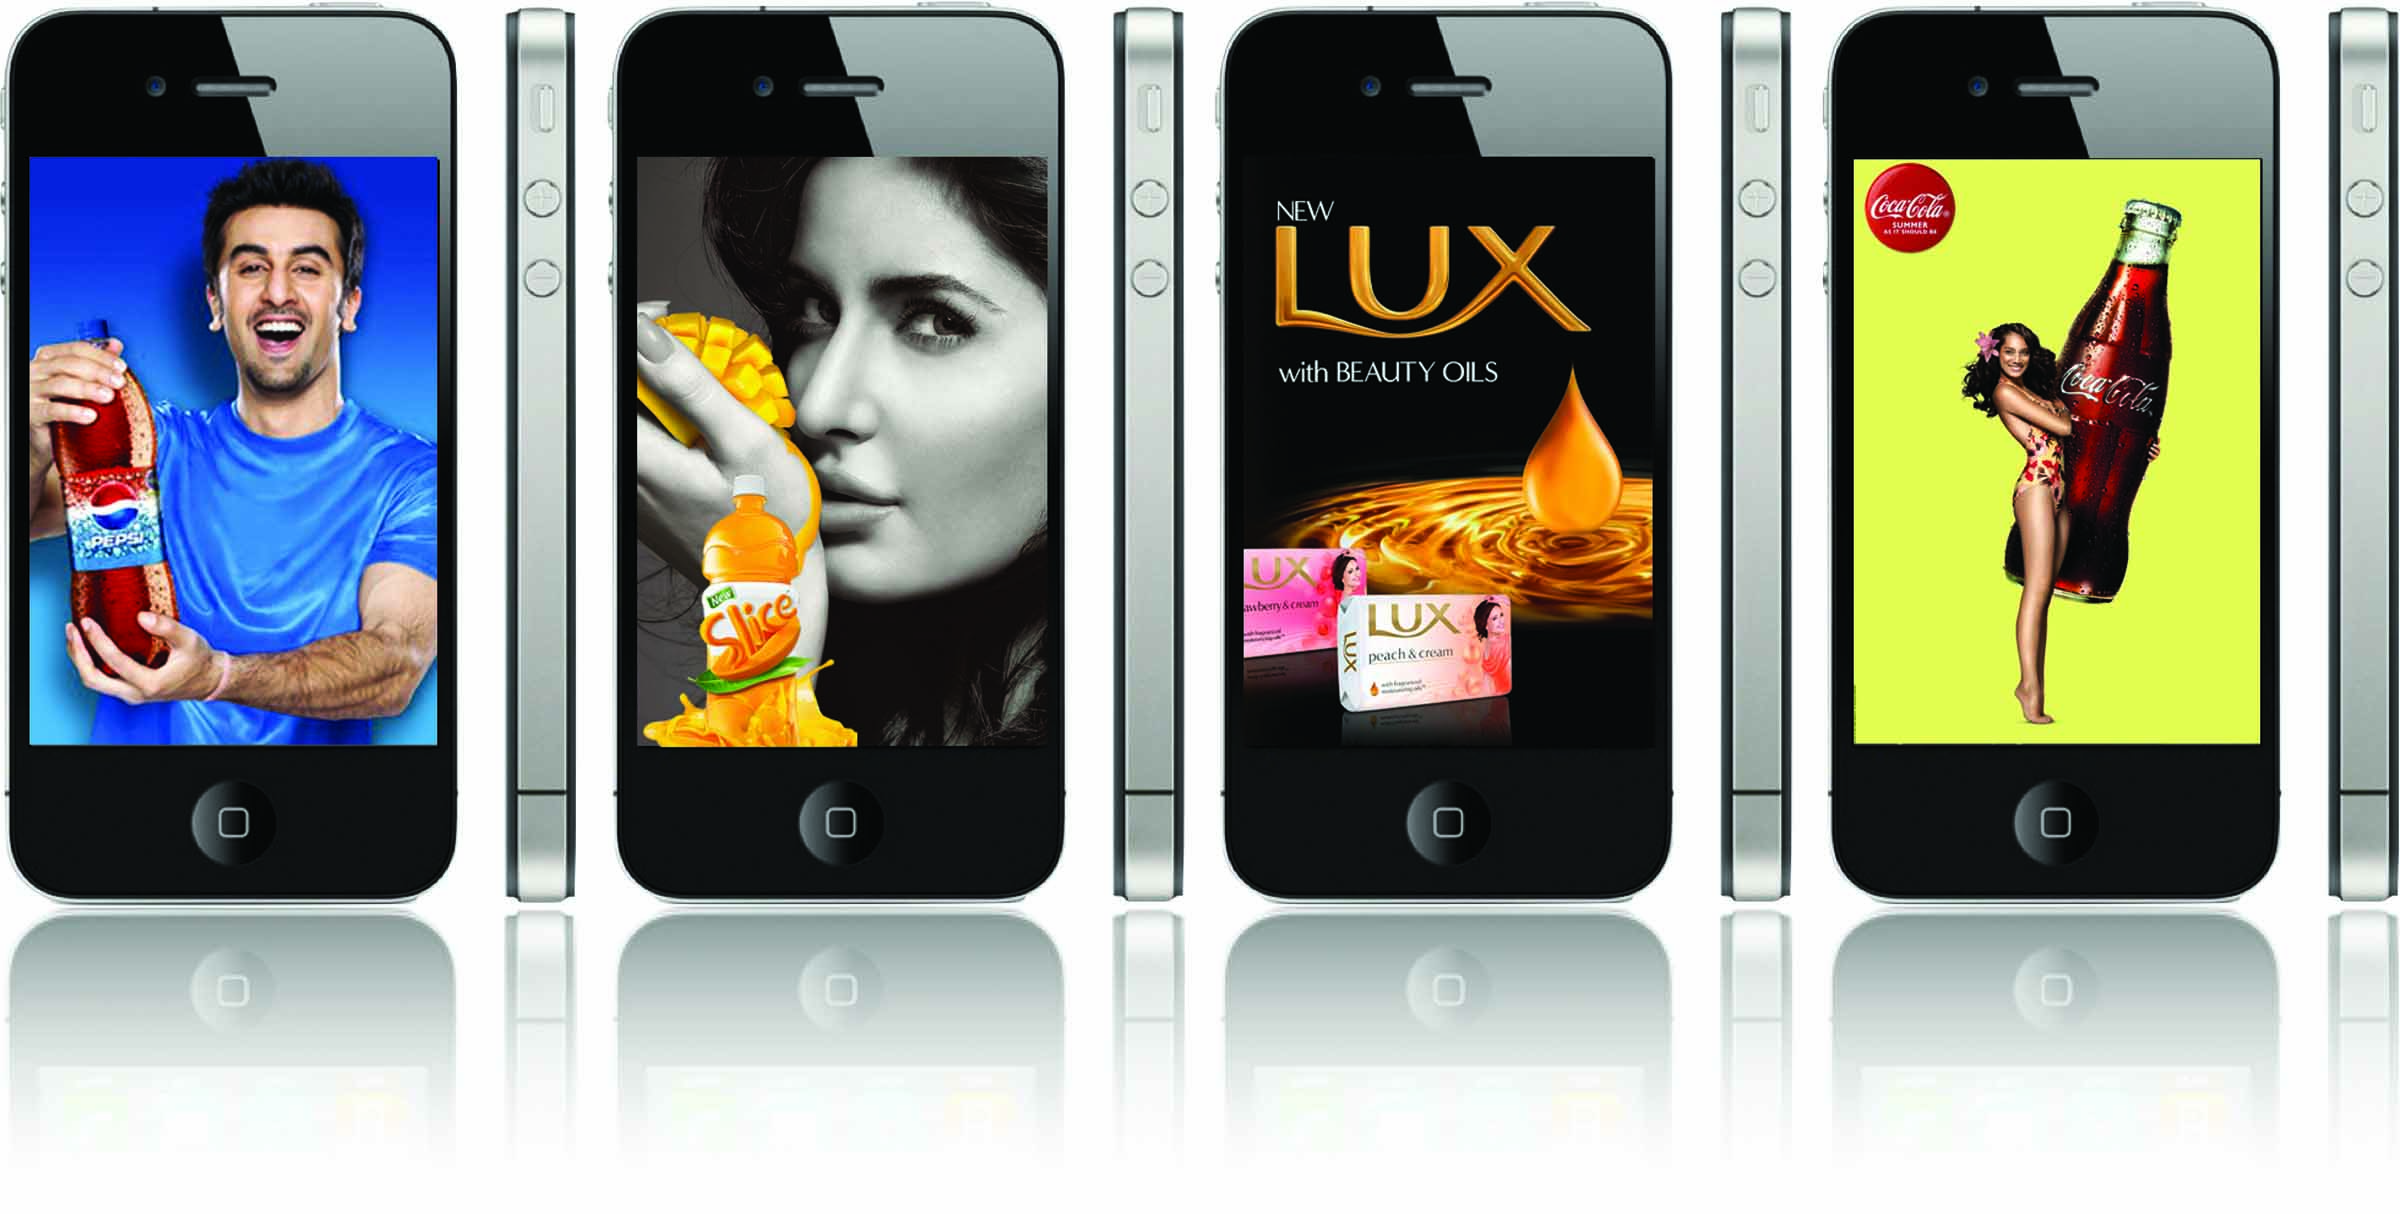 Всплывающая реклама на поко. Реклама смартфона. Реклама сотовых телефонов. Реклама мобильного приложения. Рекламные изображения телефонов.